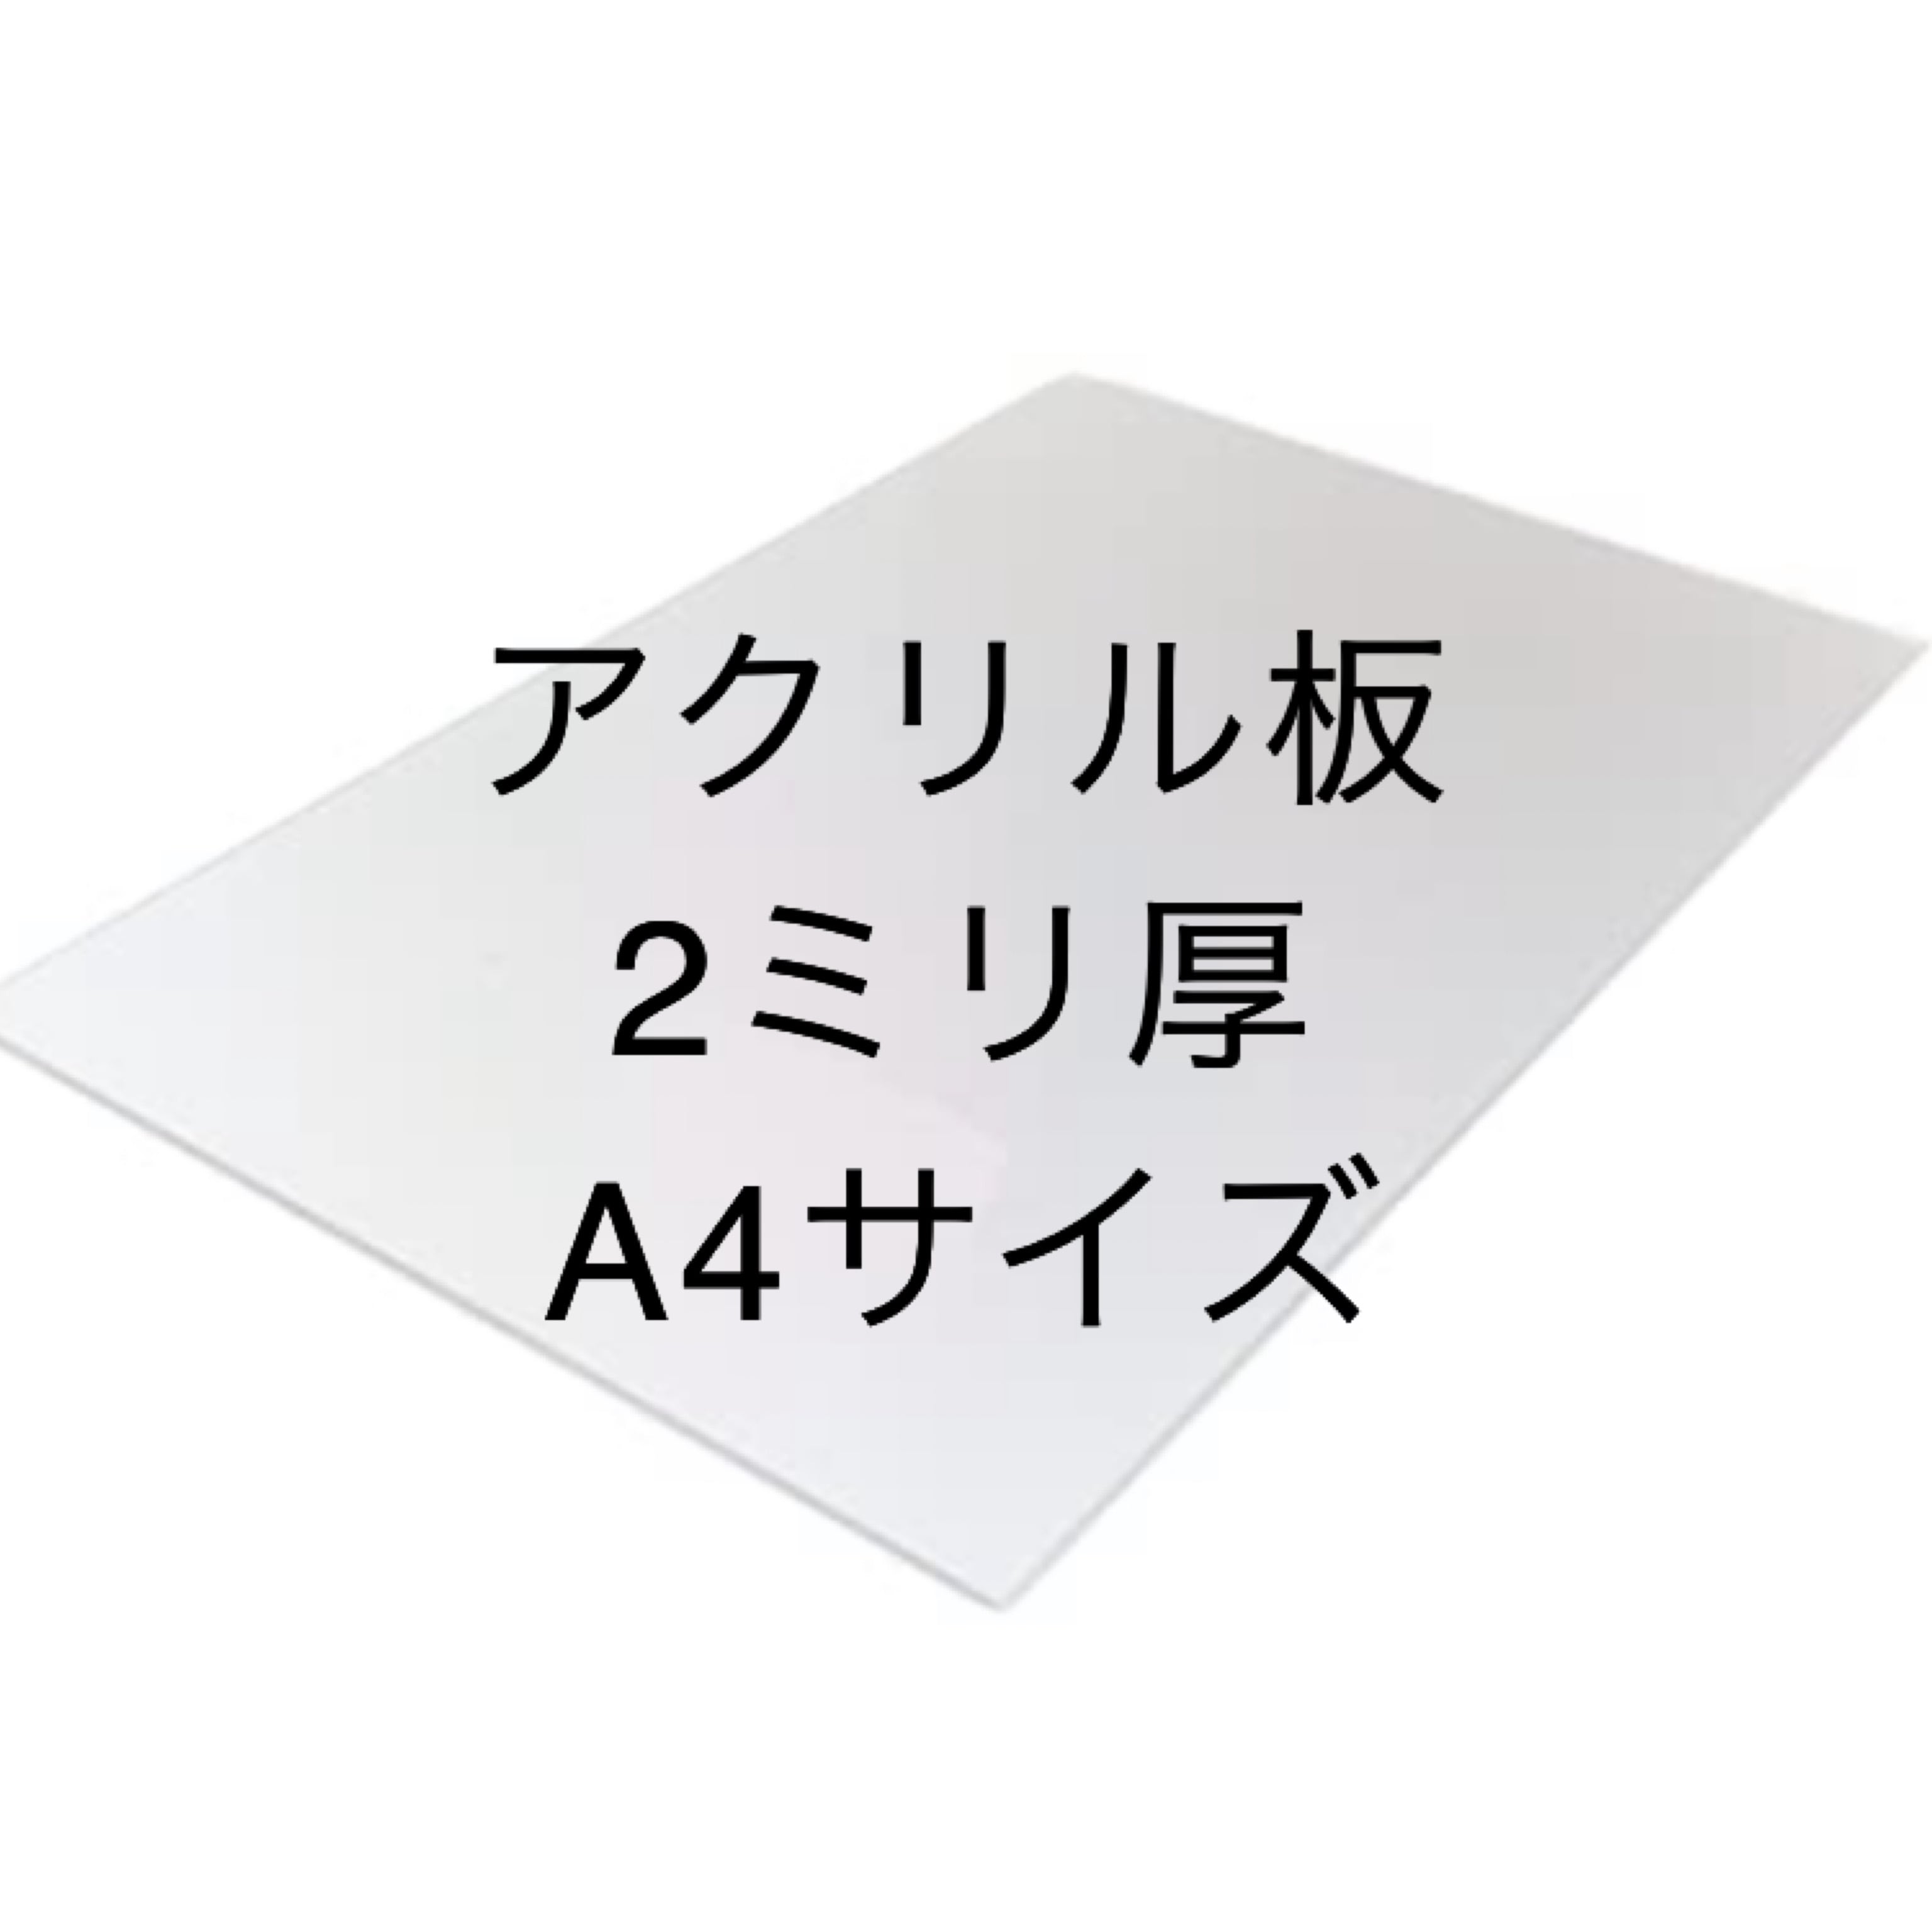 日本製 アクリル板 透明(押出板) 厚み20mm 900X900mm 縮小カット1枚無料 切断面仕上なし (面取り商品のリンクあり) - 2